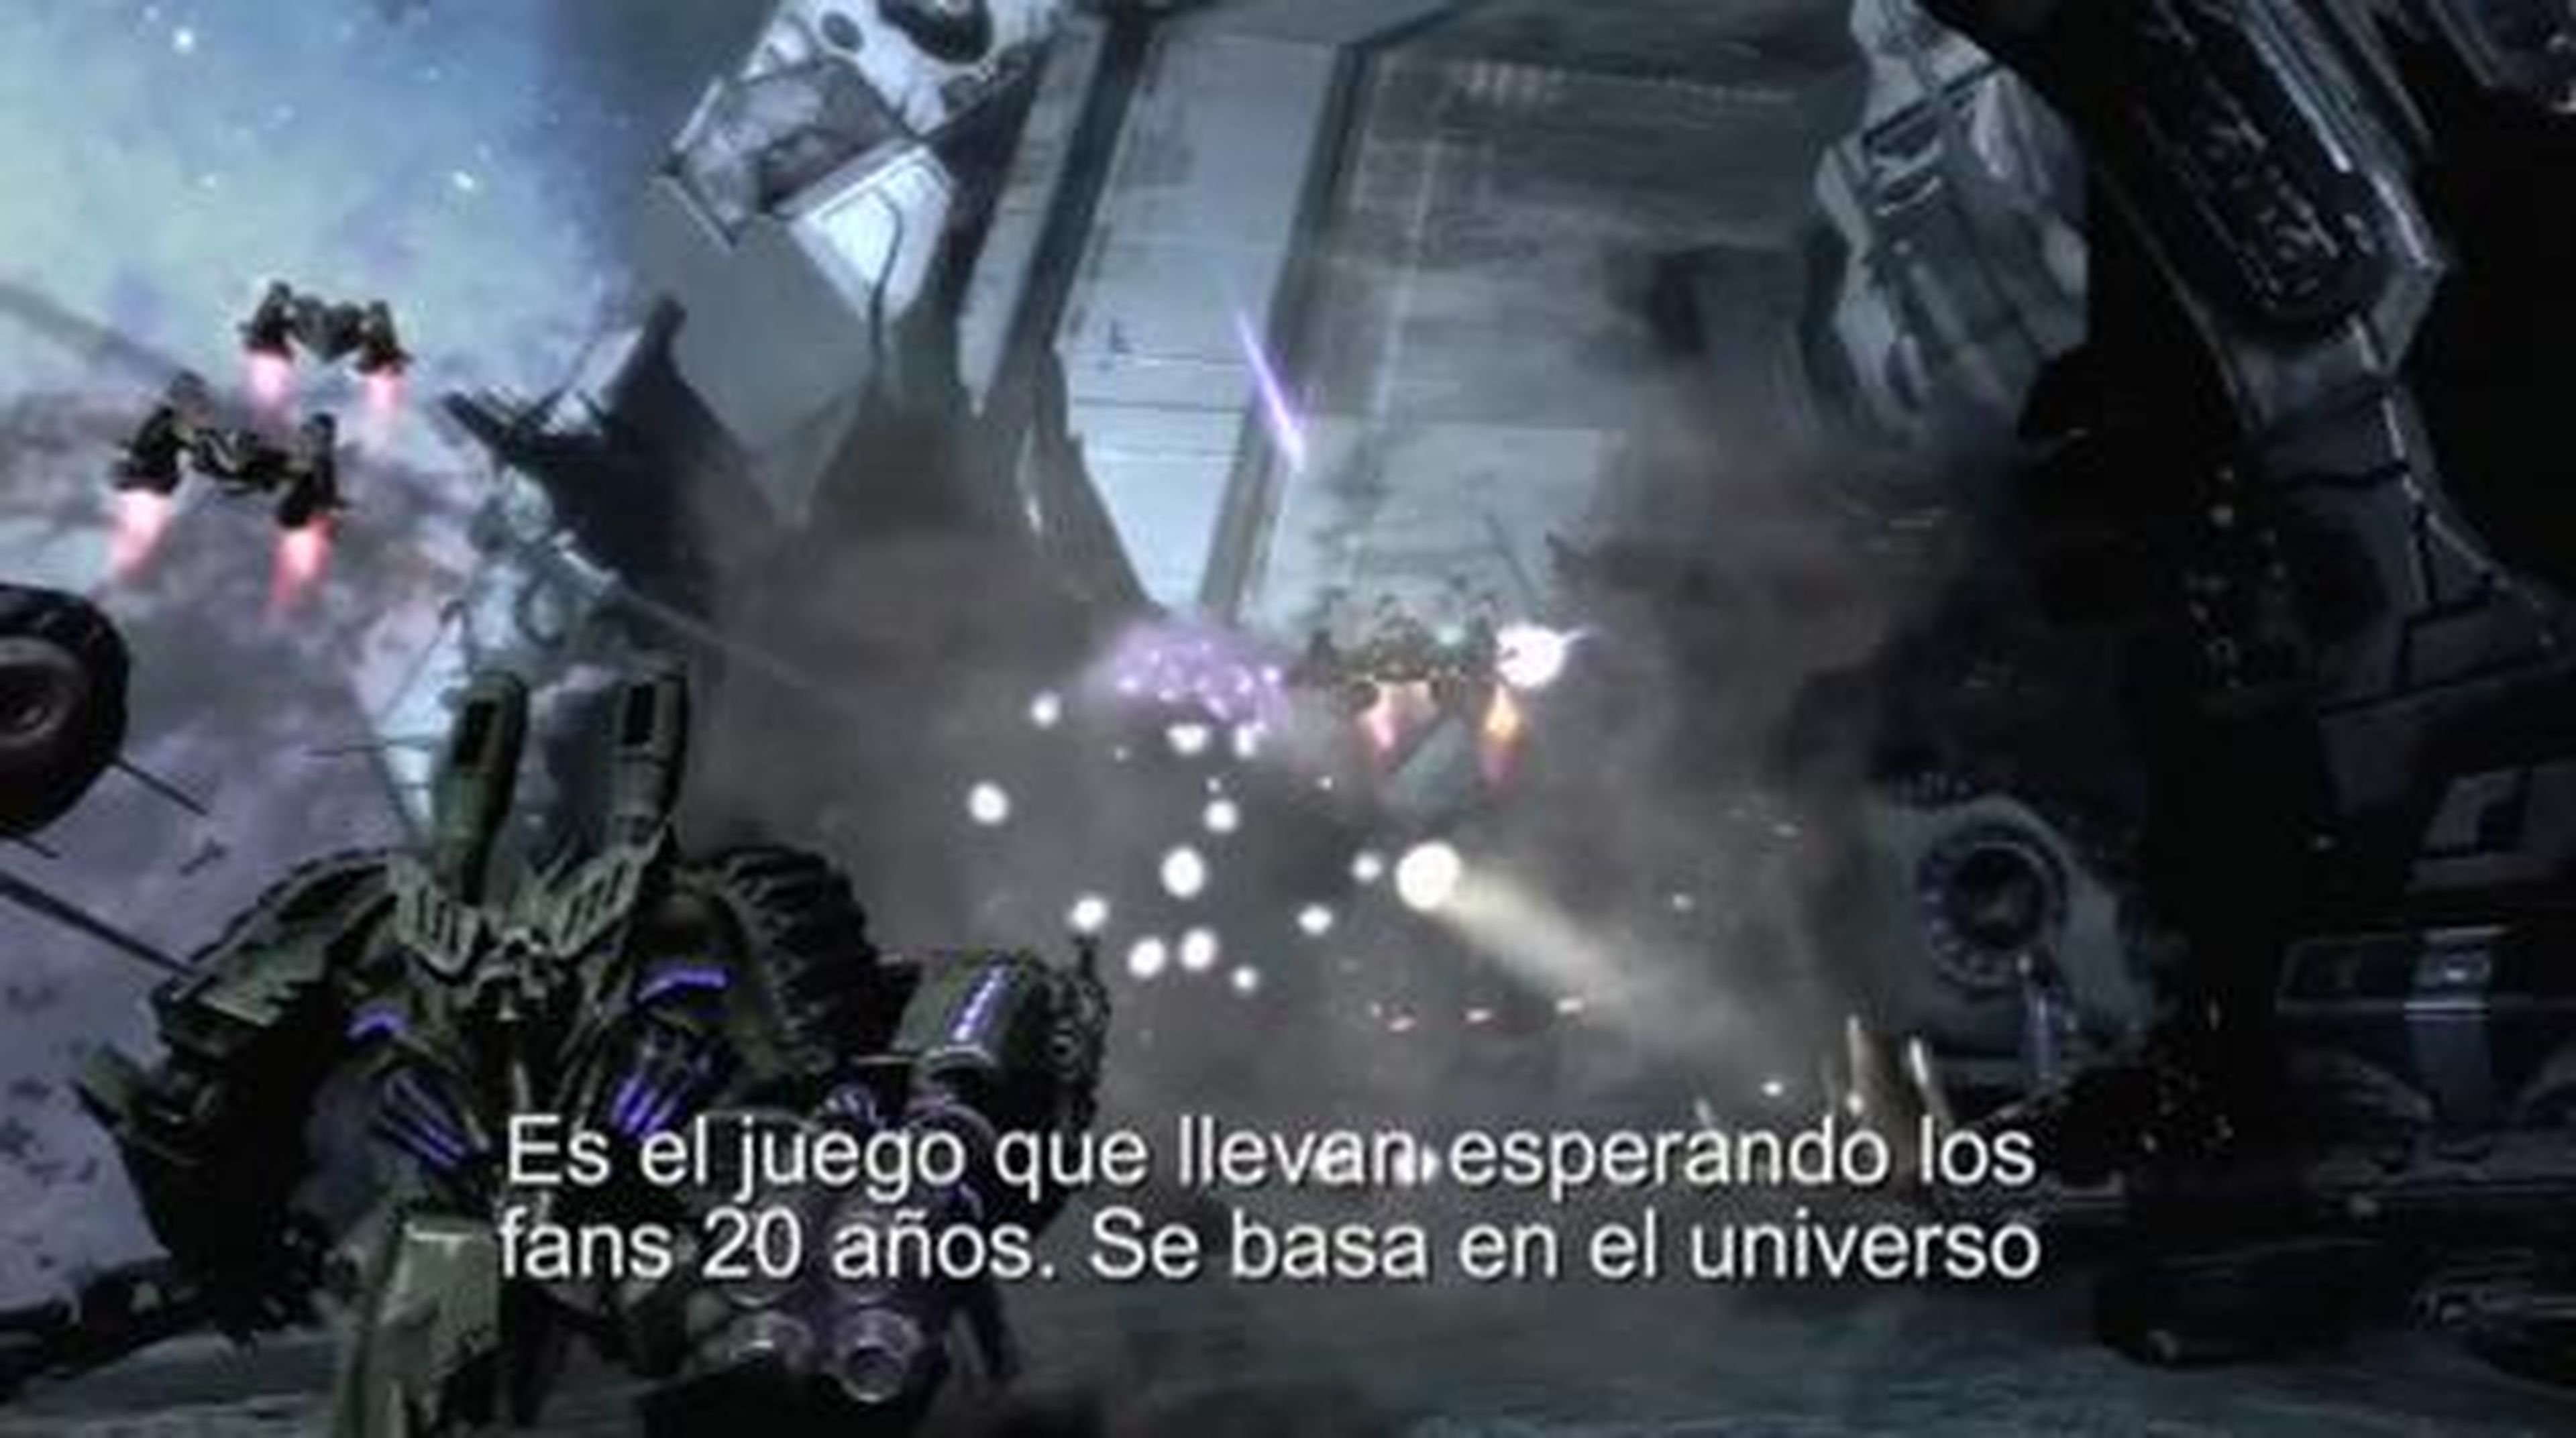 Transformers La Guerra por Cybertron Behind the Scenes Trailer Castellano